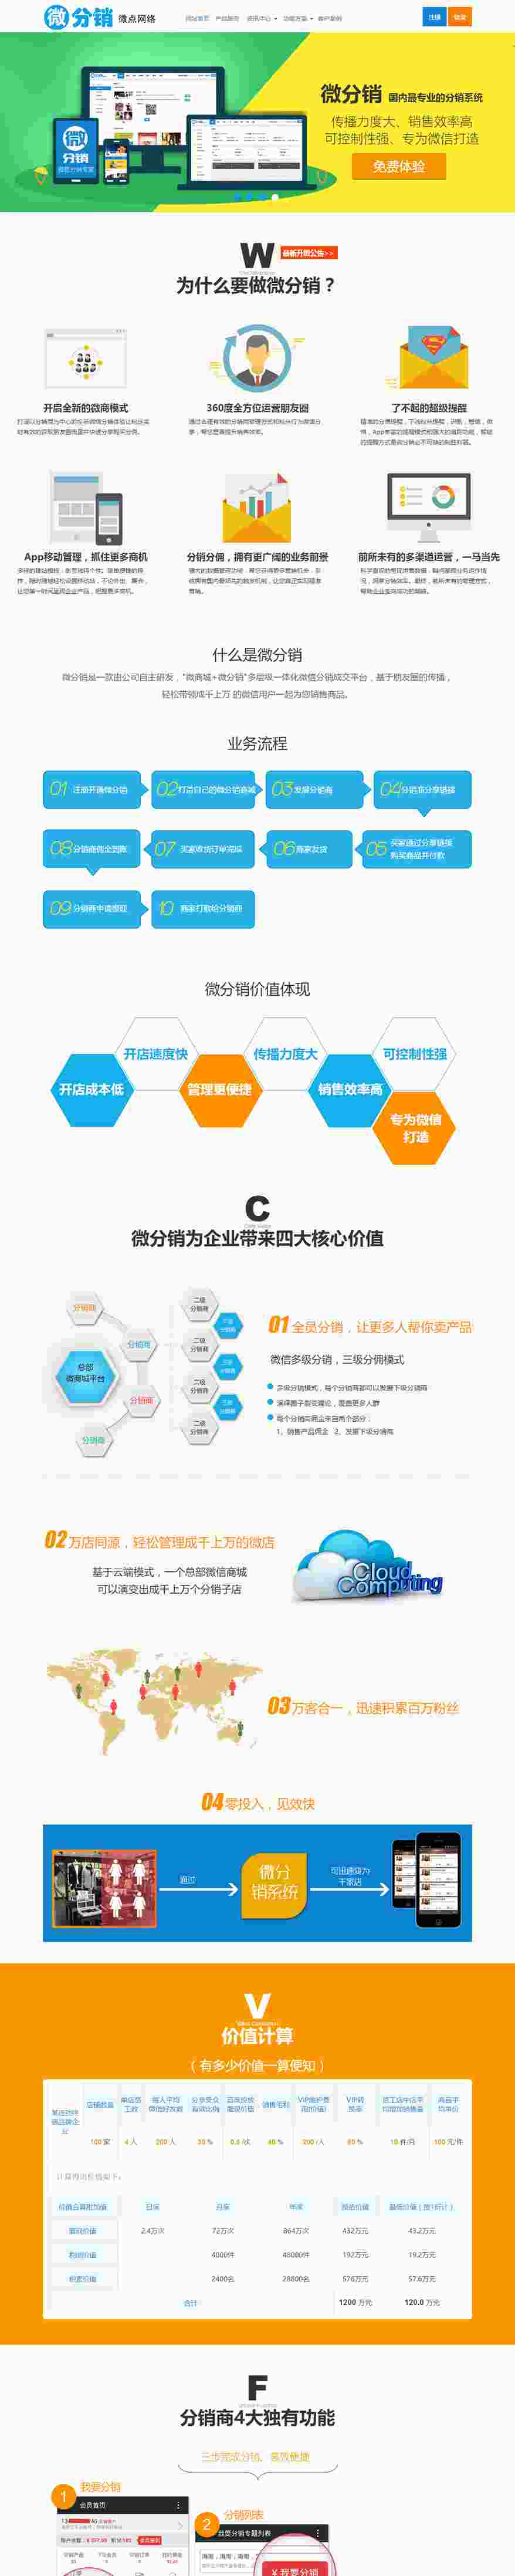 中文营销型微分销官网展示模板HTML5整站网站模板